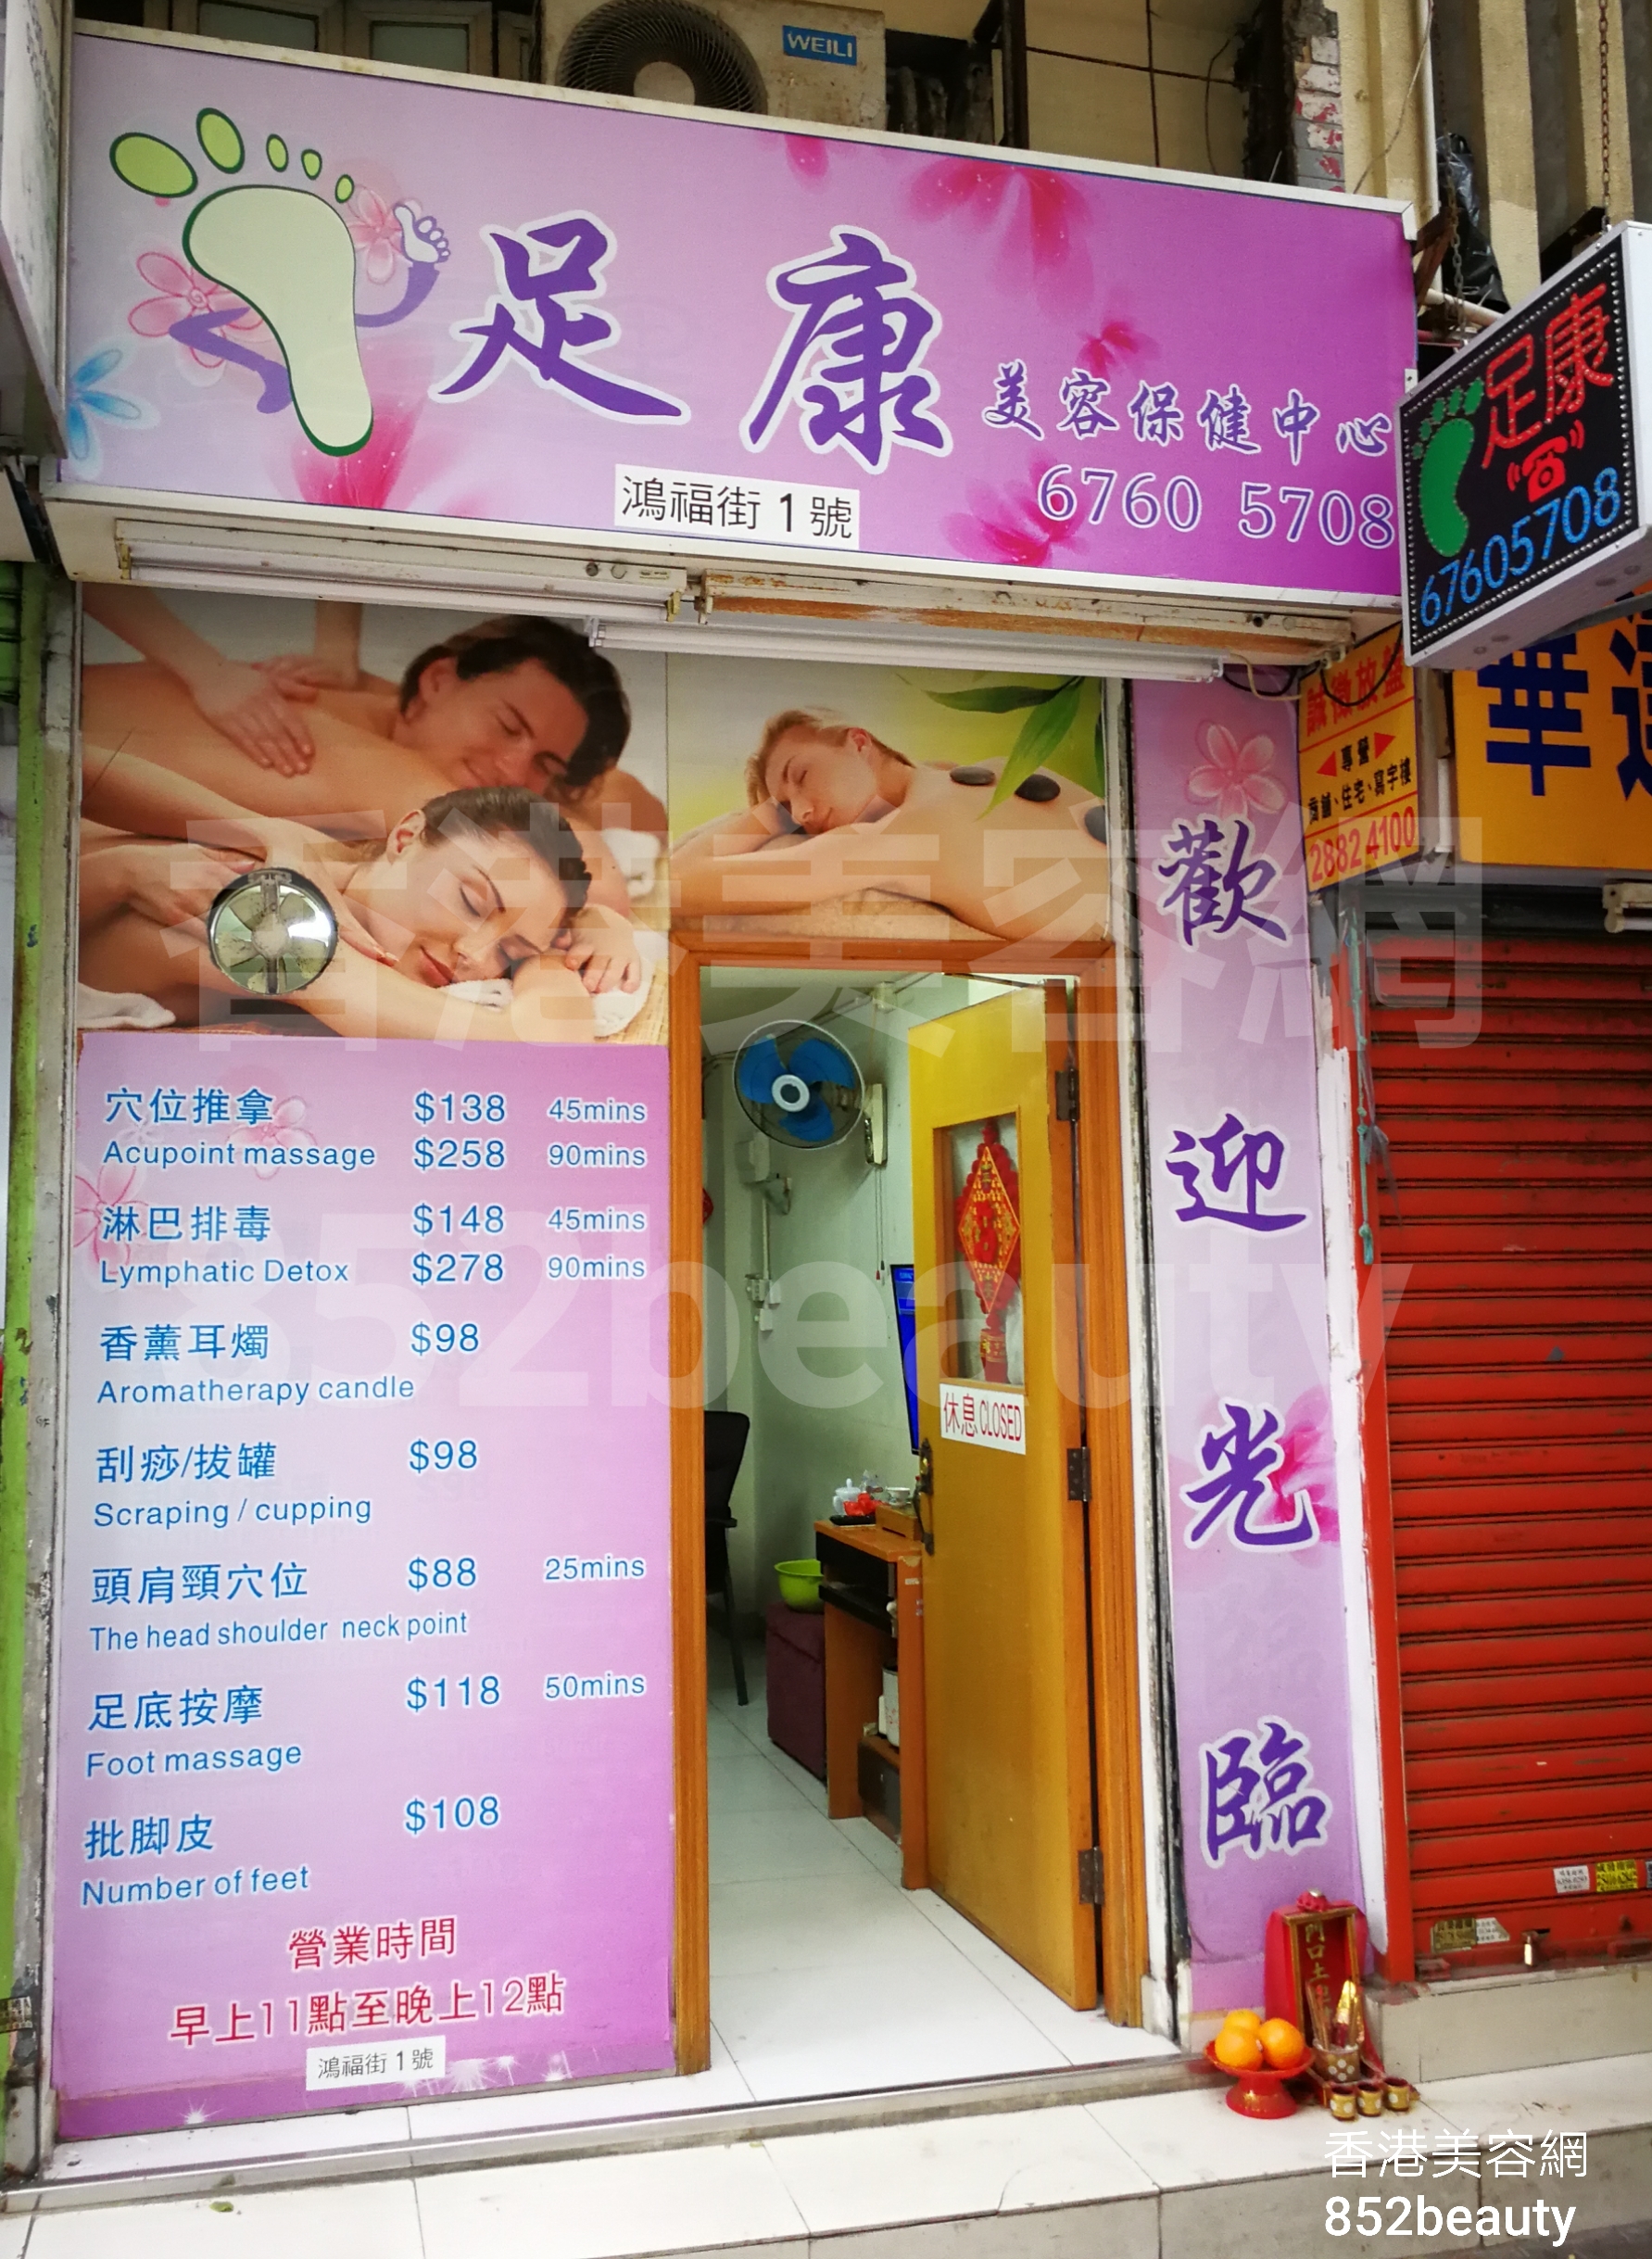 香港美容網 Hong Kong Beauty Salon 美容院 / 美容師: 足康美容保健中心